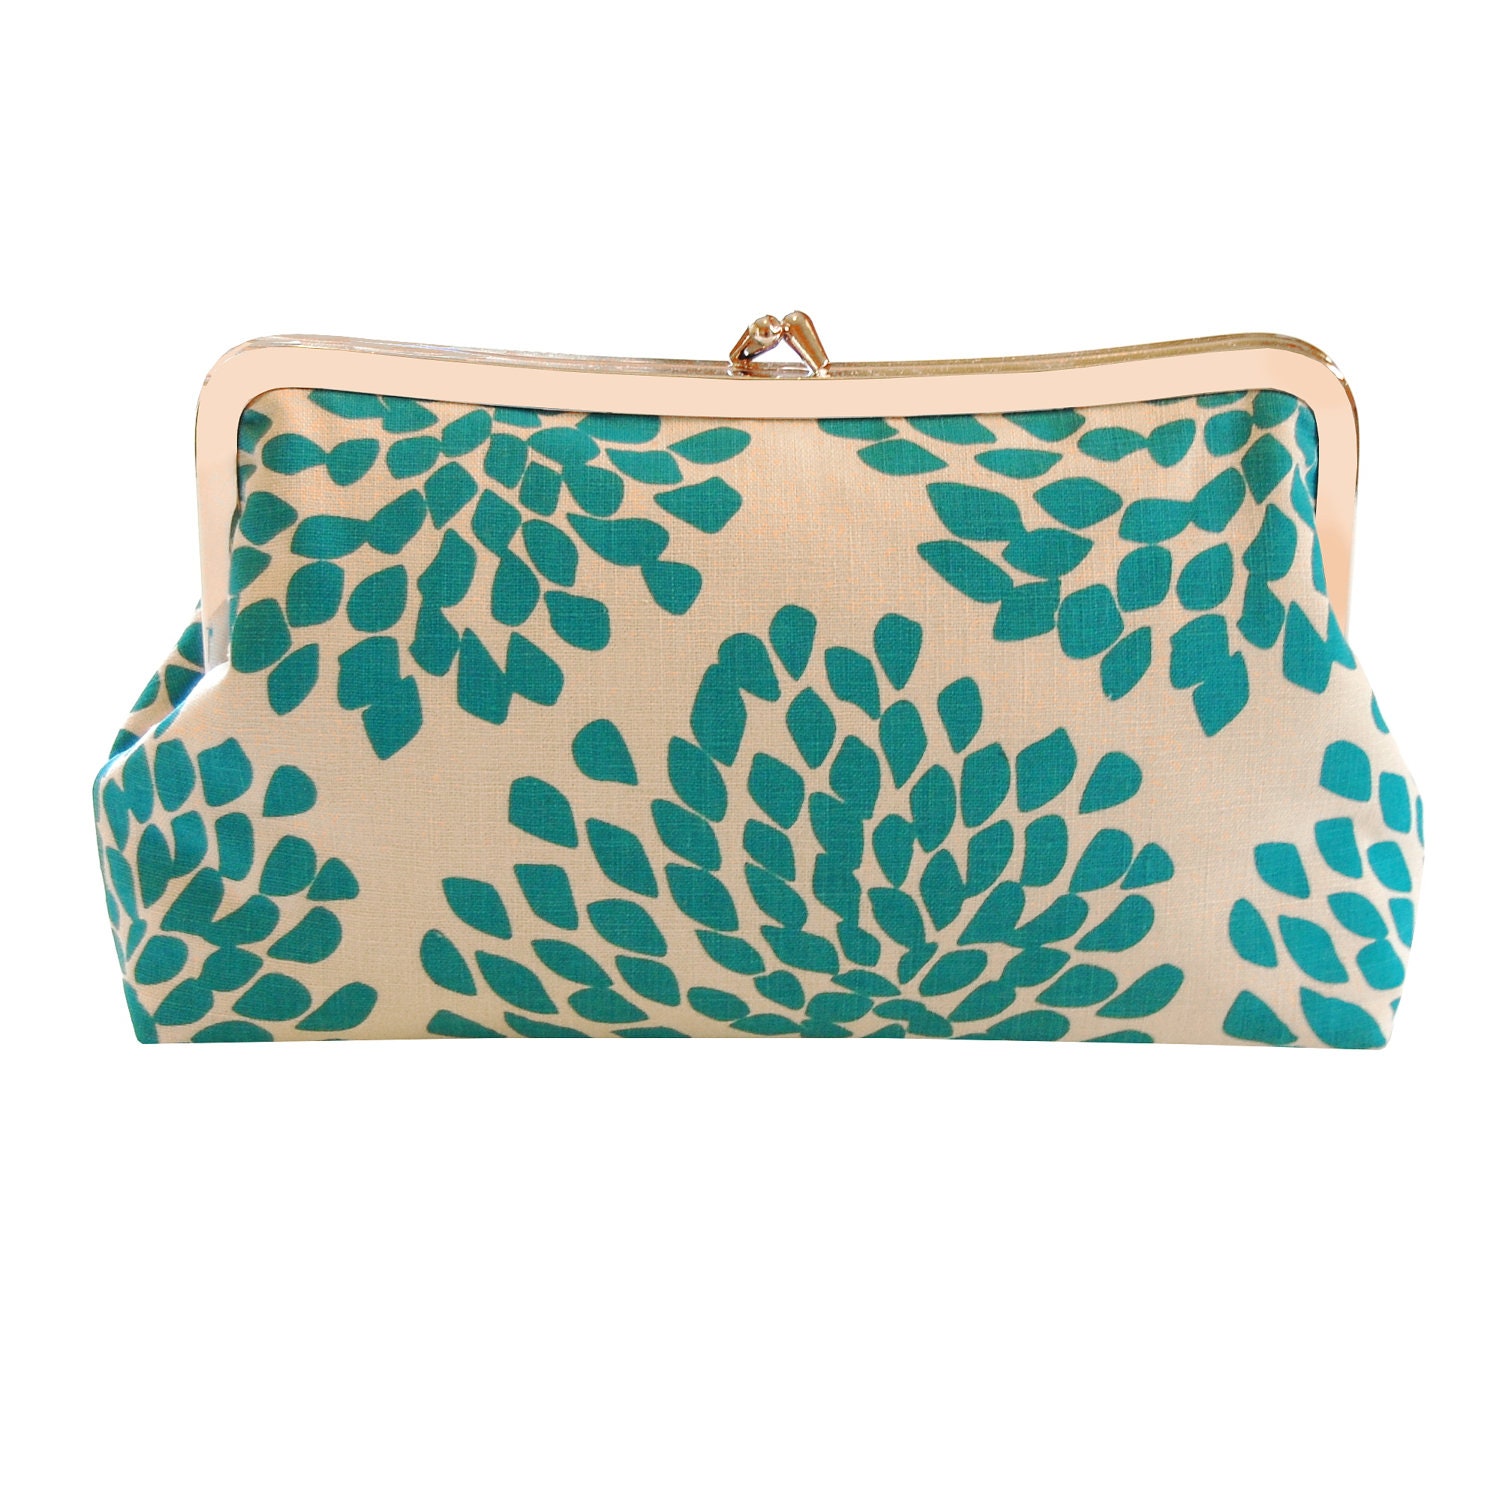 Clutch purse with aqua blossoms screenprint